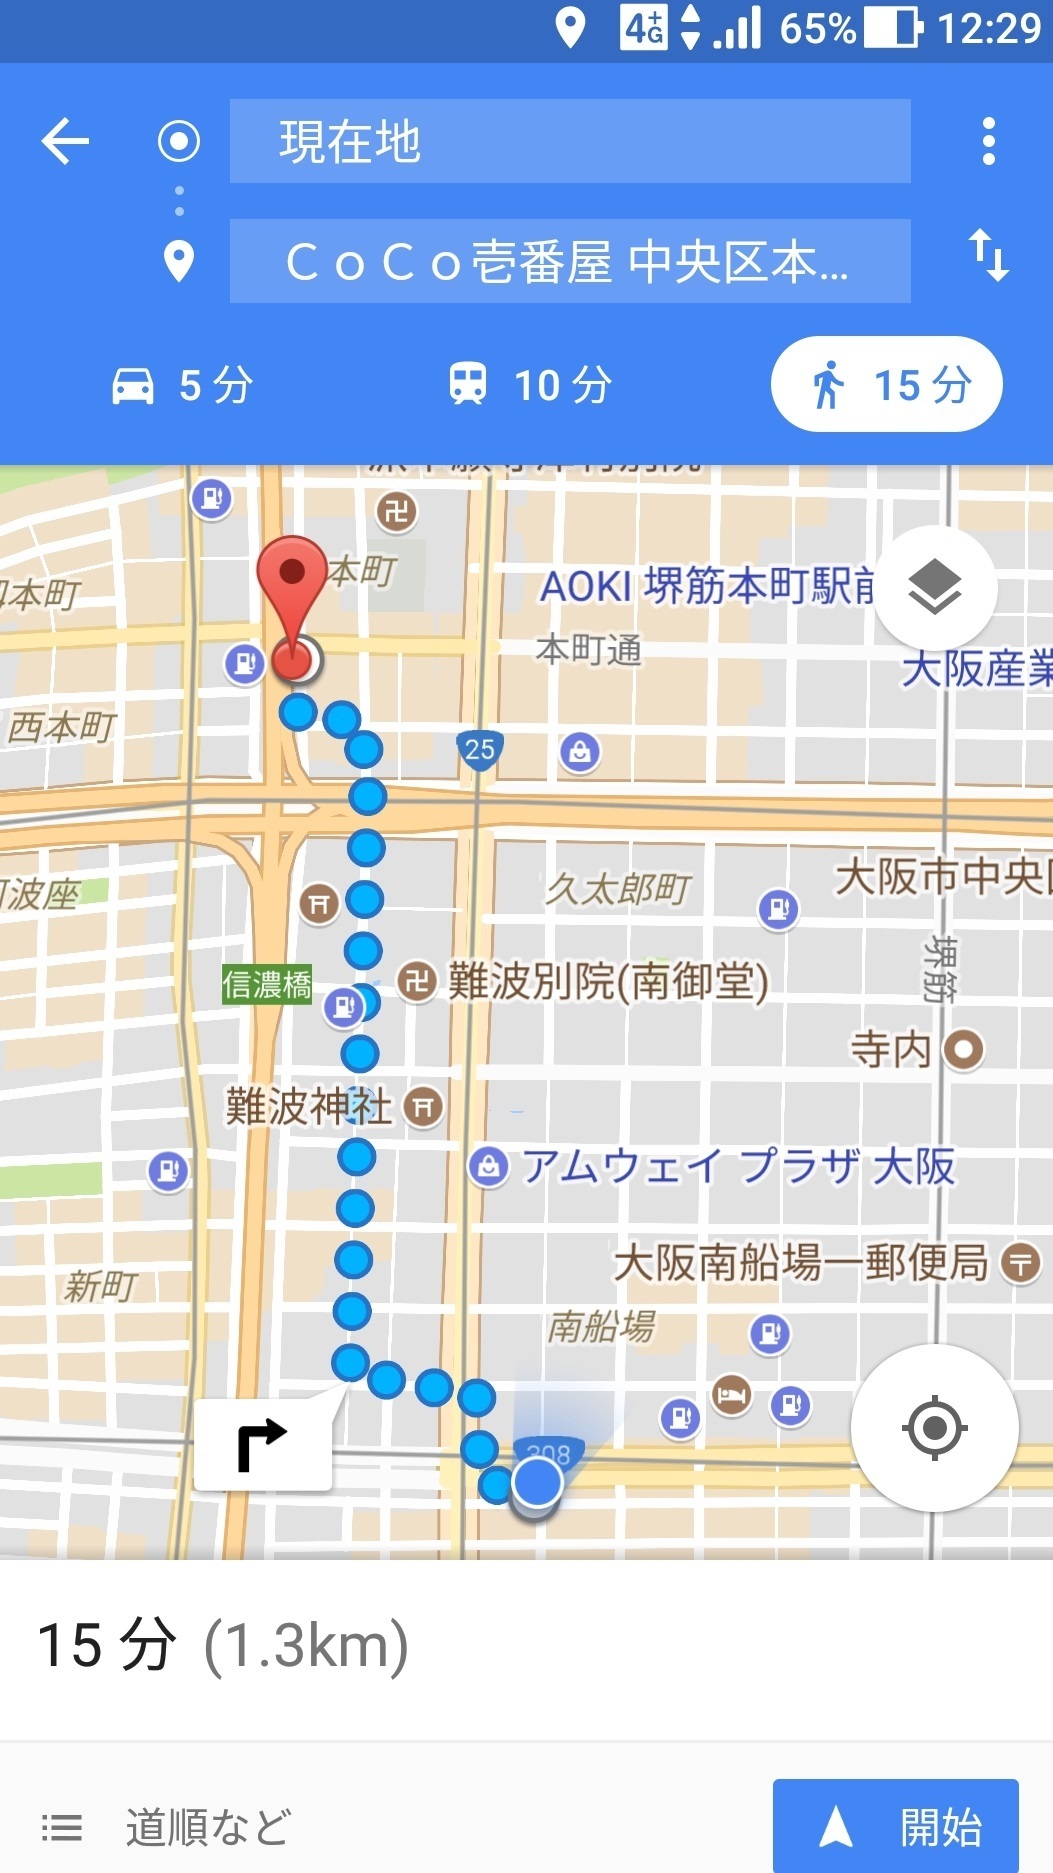 グーグルマップ ルート検索徒歩で目的地まで 現在地から経路 Simフリースマホ Asus Zenfone3使い方 設定をレビューとして